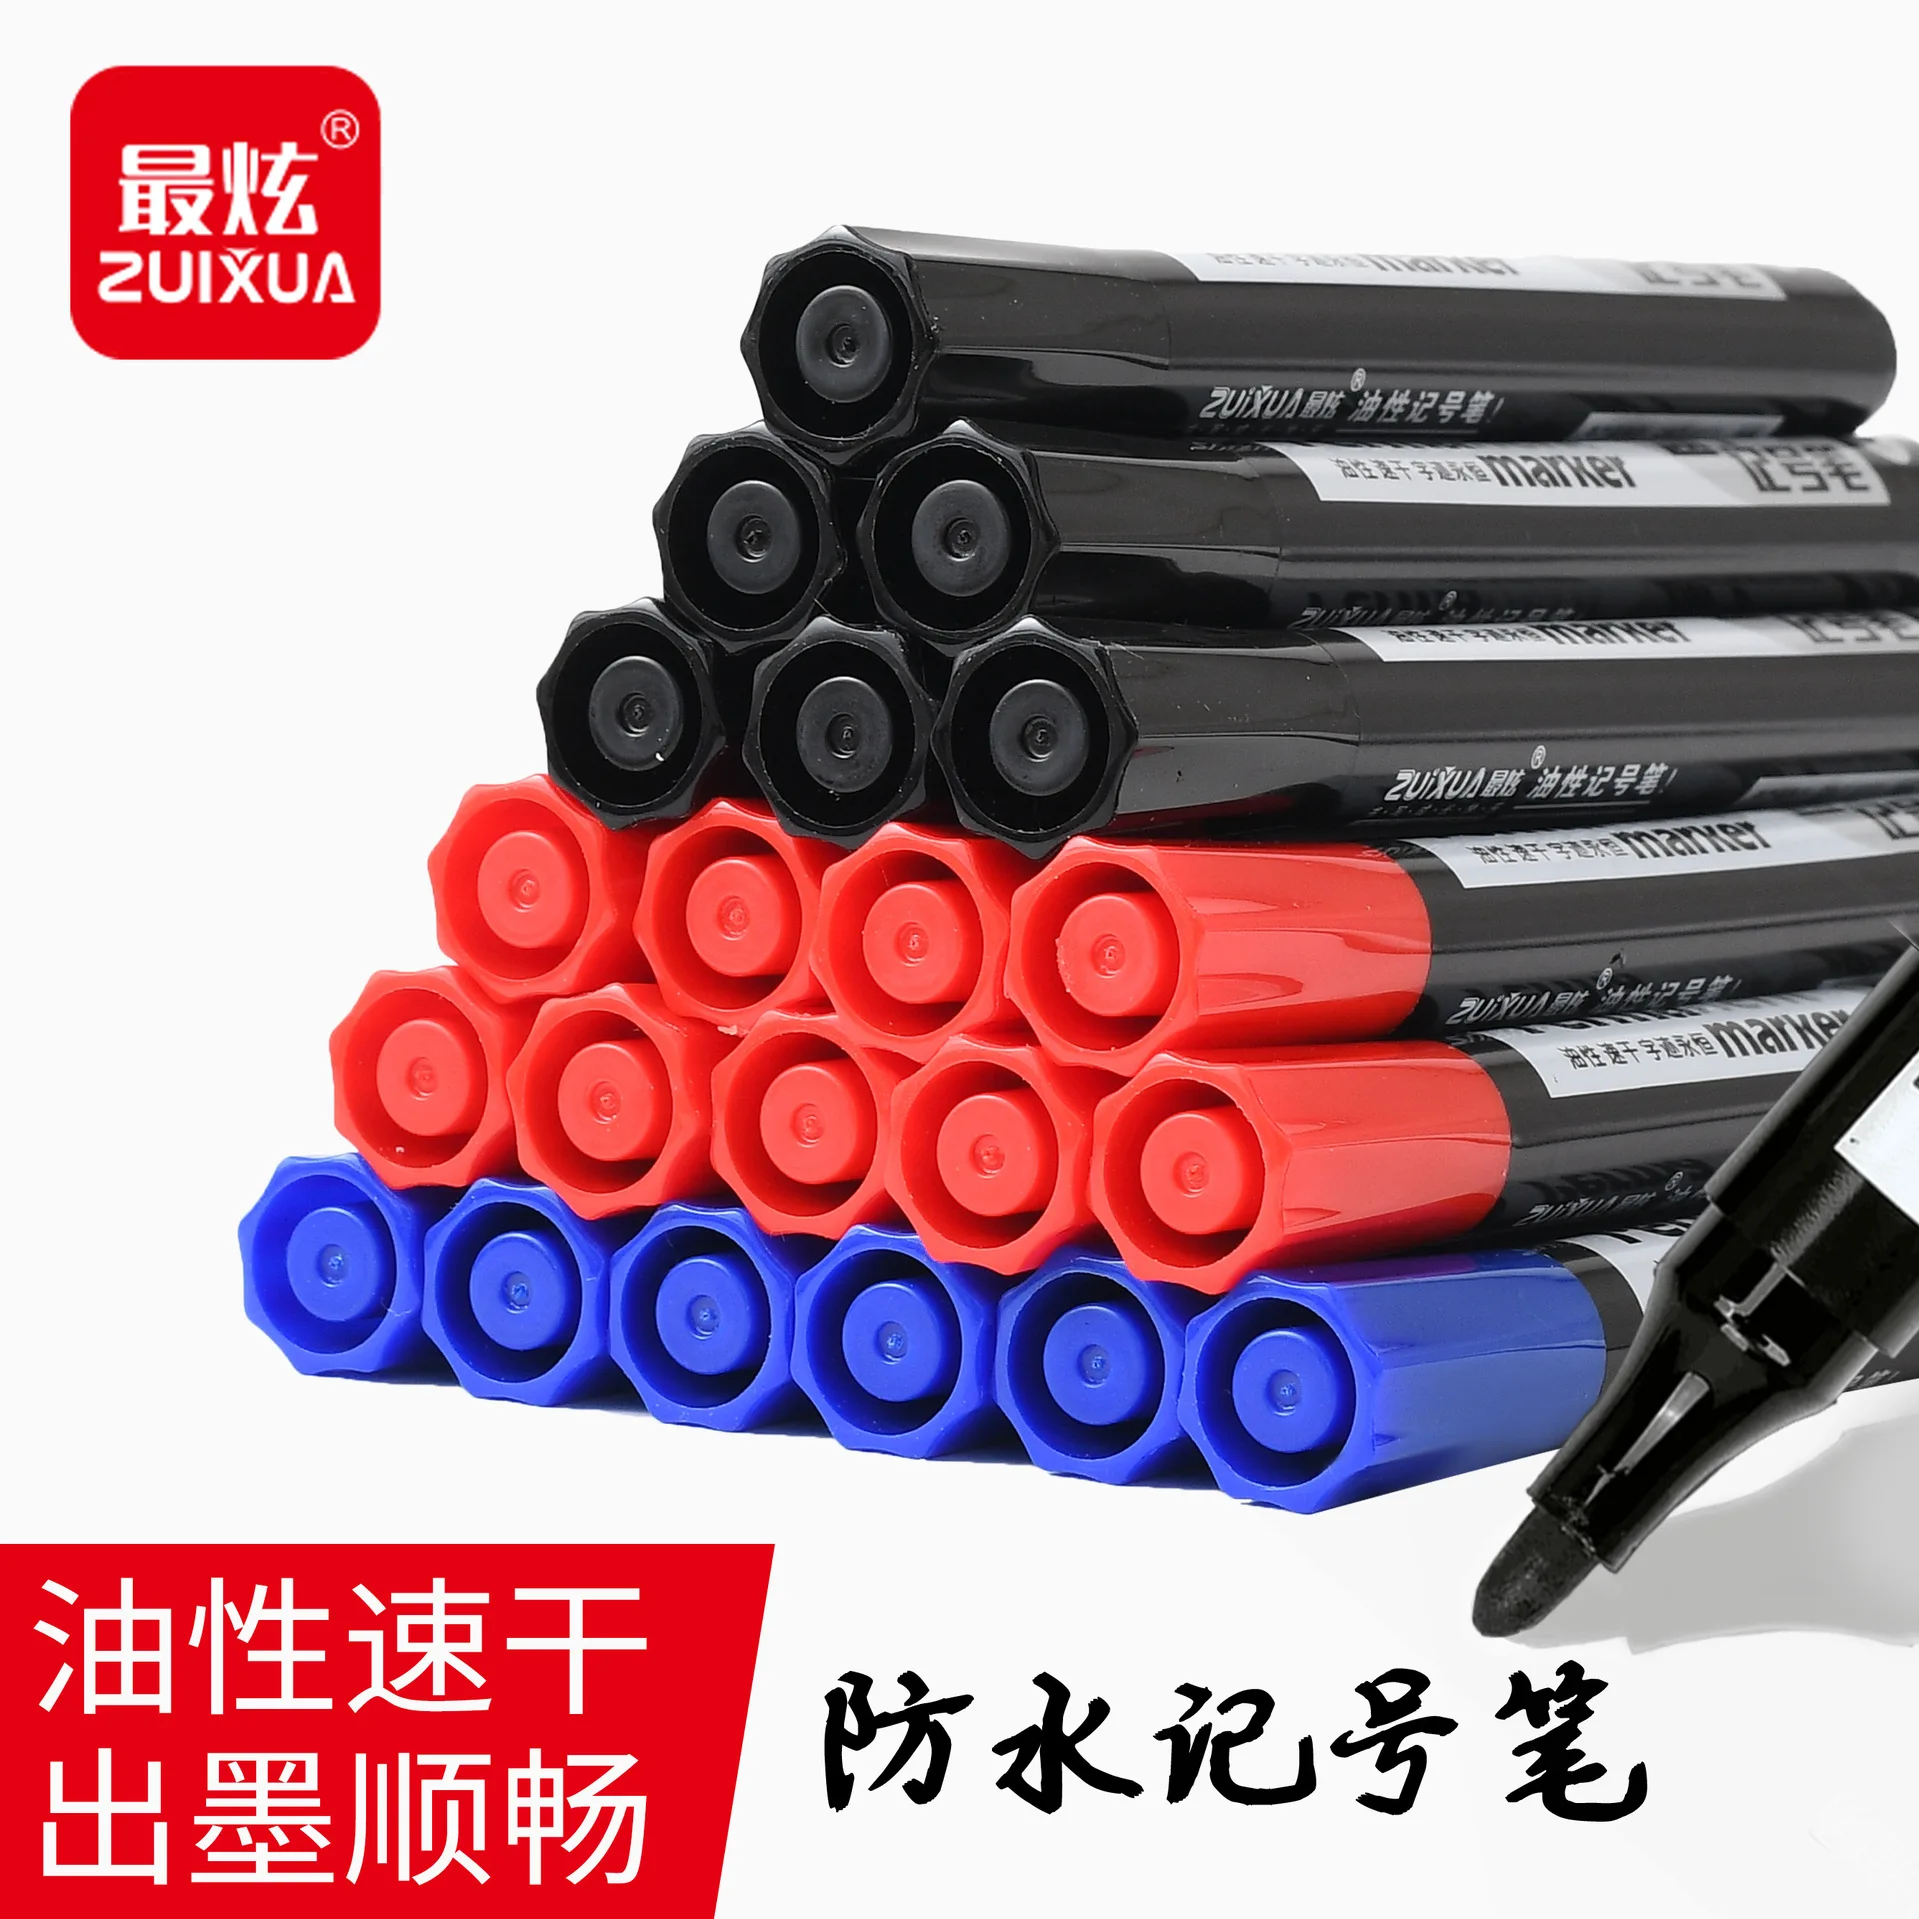 paint marker Oily marker black waterproof large logistics pen fast drying  non erasable marker waterproof marker marking pen